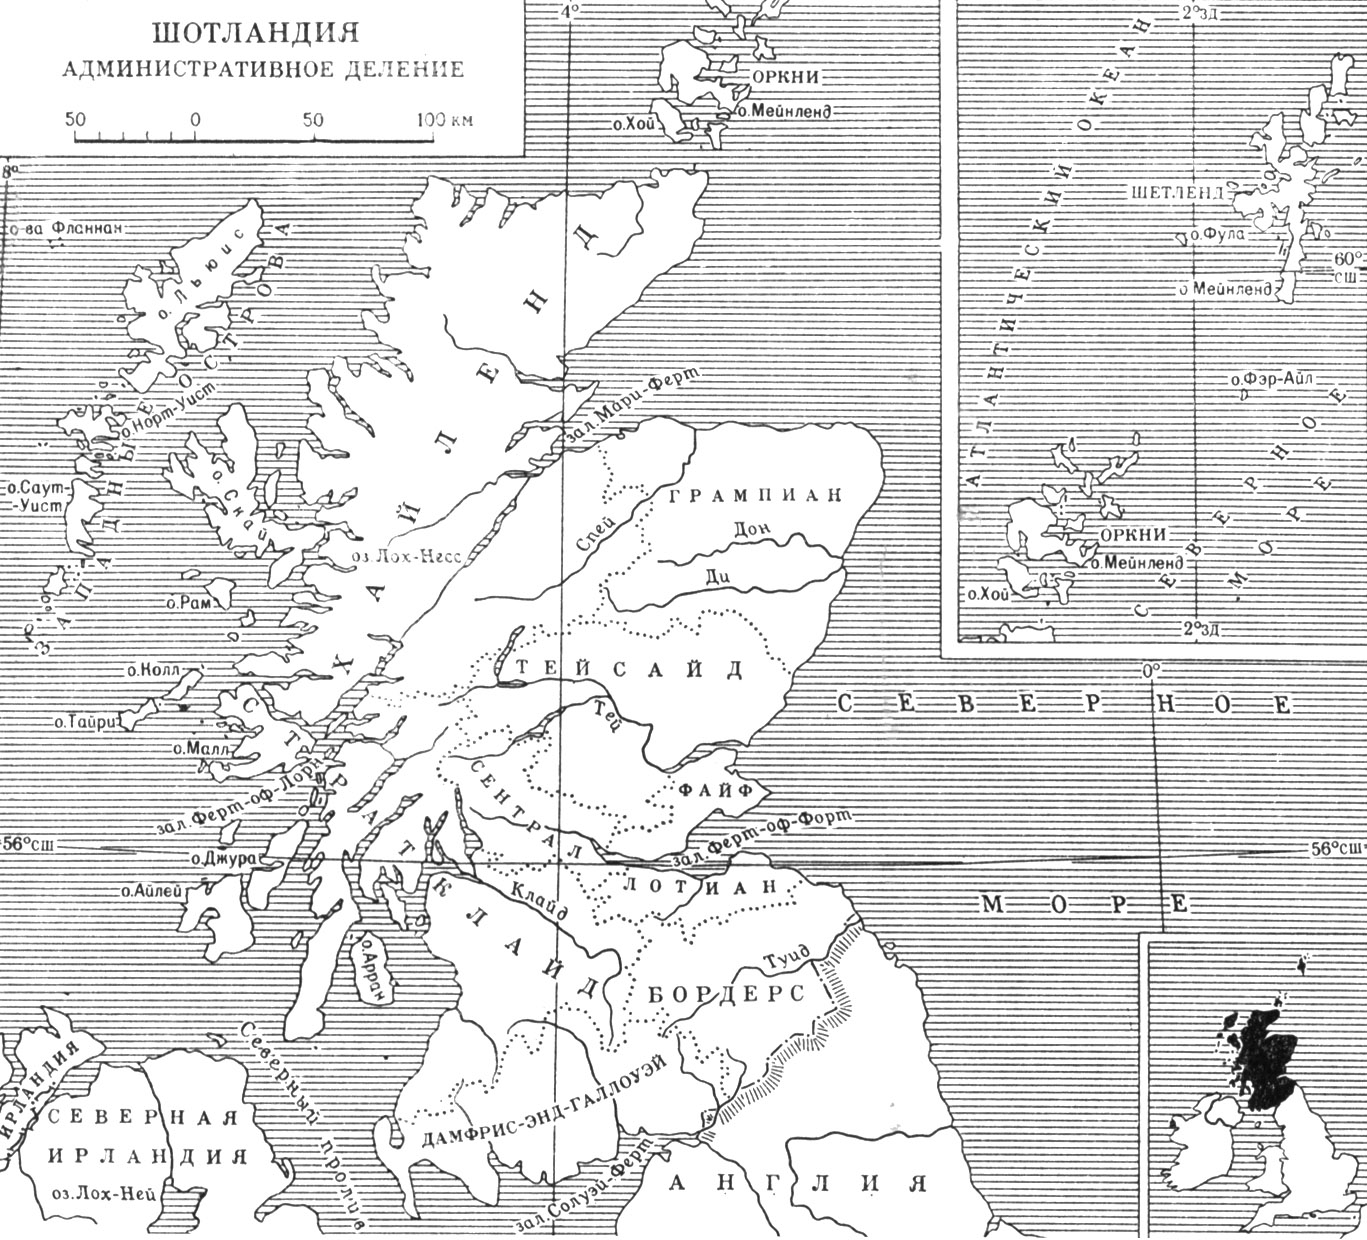 Шотландия. Административное деление (карта)